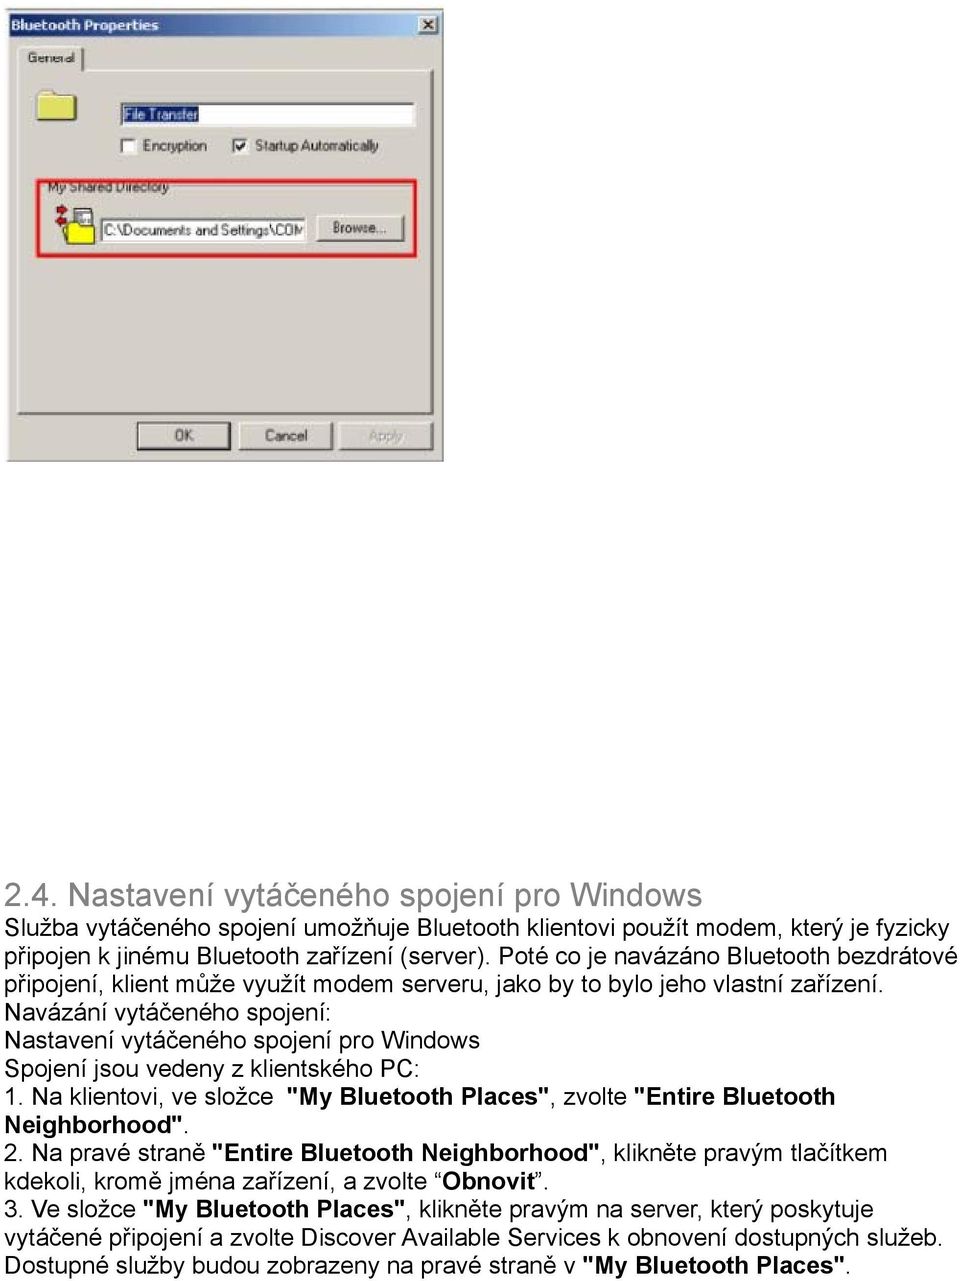 Navázání vytáčeného spojení: Nastavení vytáčeného spojení pro Windows Spojení jsou vedeny z klientského PC: 1. Na klientovi, ve složce "My Bluetooth Places", zvolte "Entire Bluetooth Neighborhood". 2.